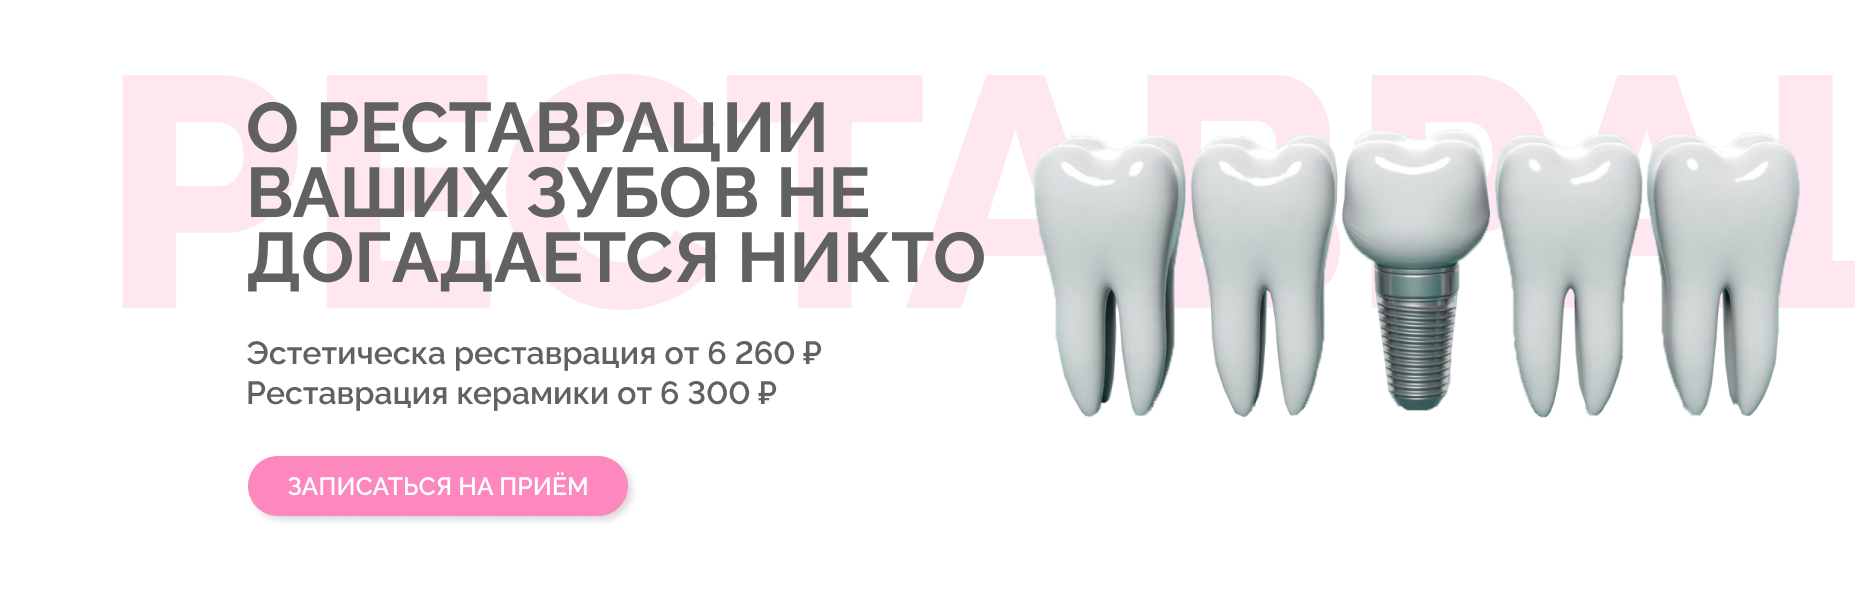 Реставрация зубов Томск Отрадный стоматология томск астра